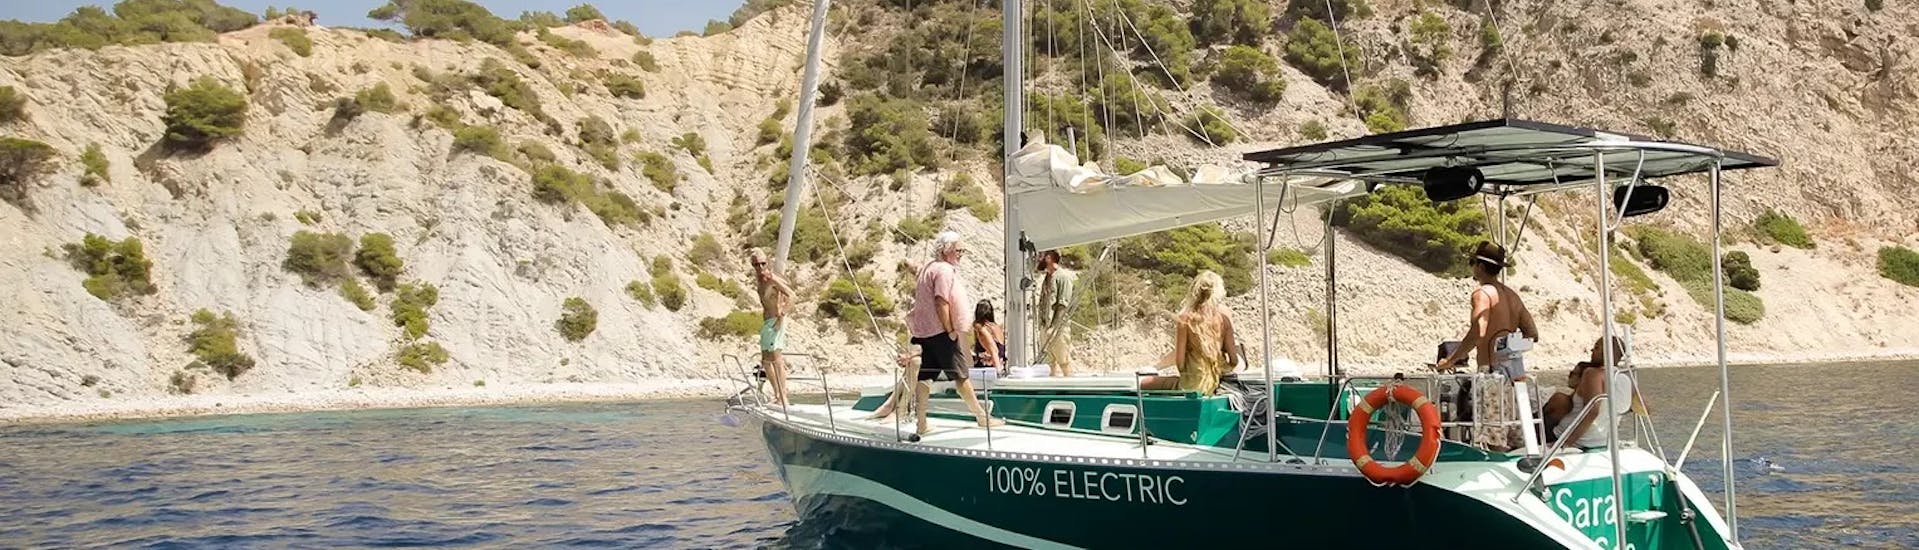 De monohull verkent de kust rond Ibiza tijdens de Privé volledige dag boottocht rond Ibiza met snorkelen met La Bella Verde.